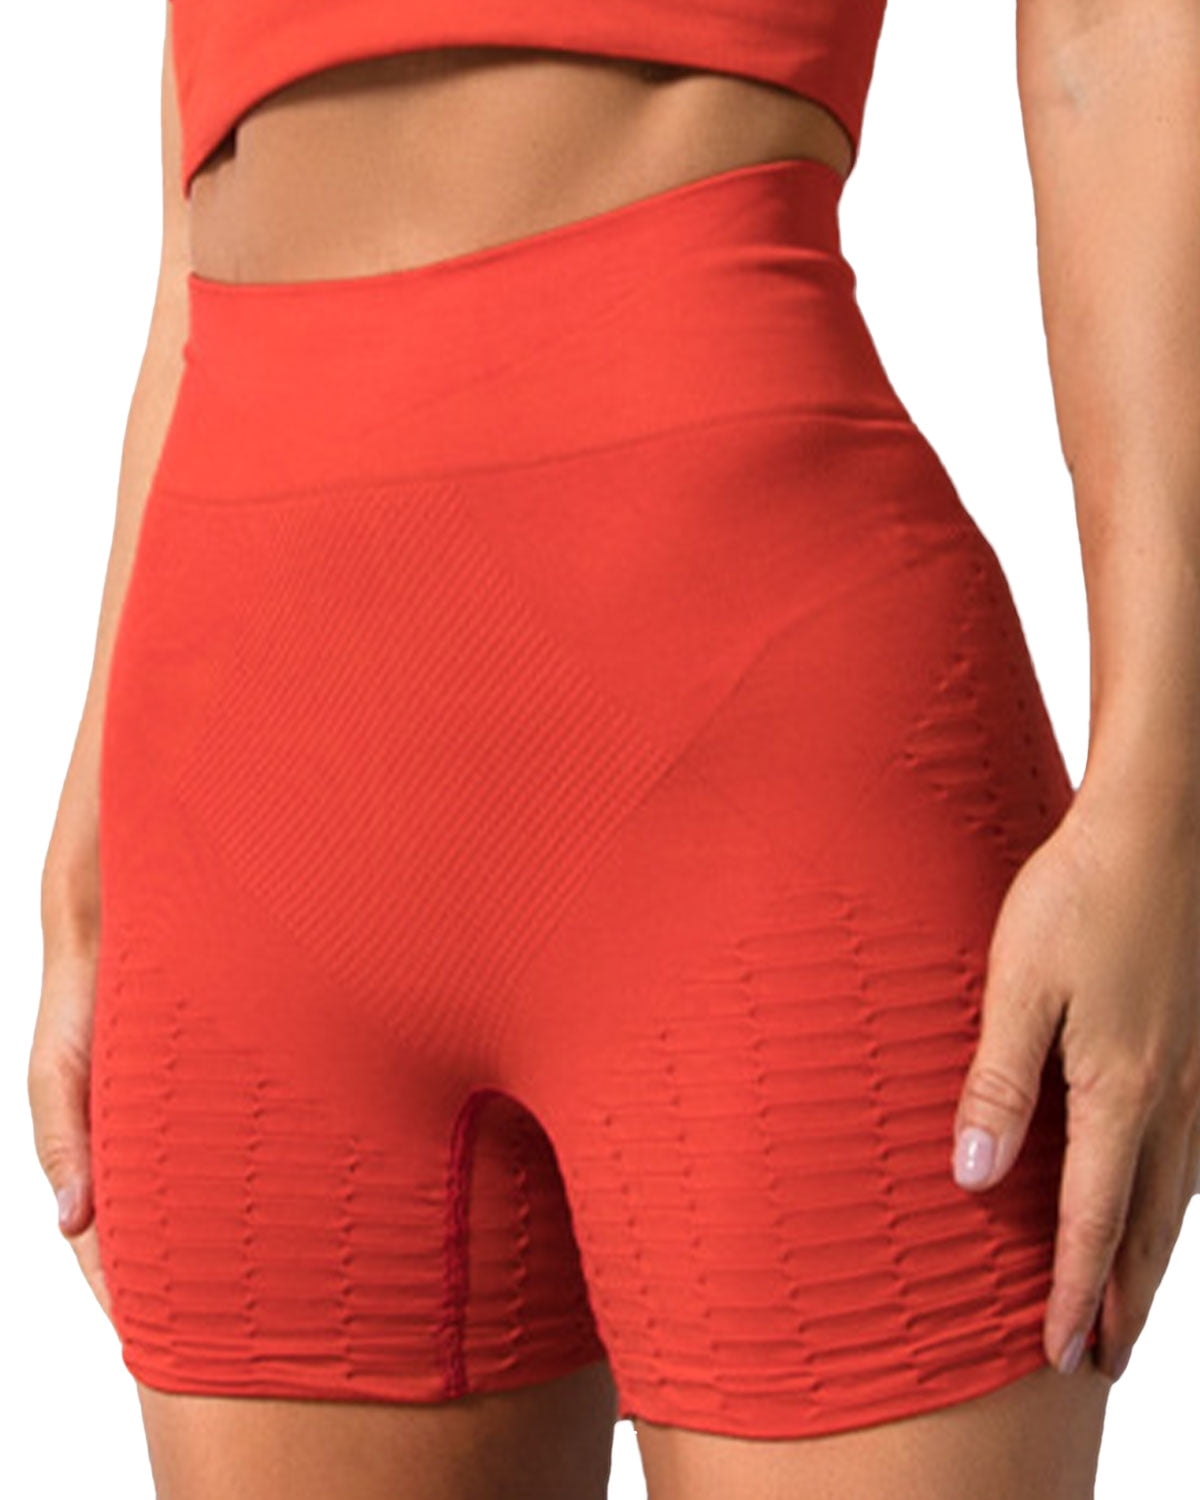 Details about   Women's Yoga Sport Shorts High Waist Shorts Butt Lift Hot Pants Fitness Gym 